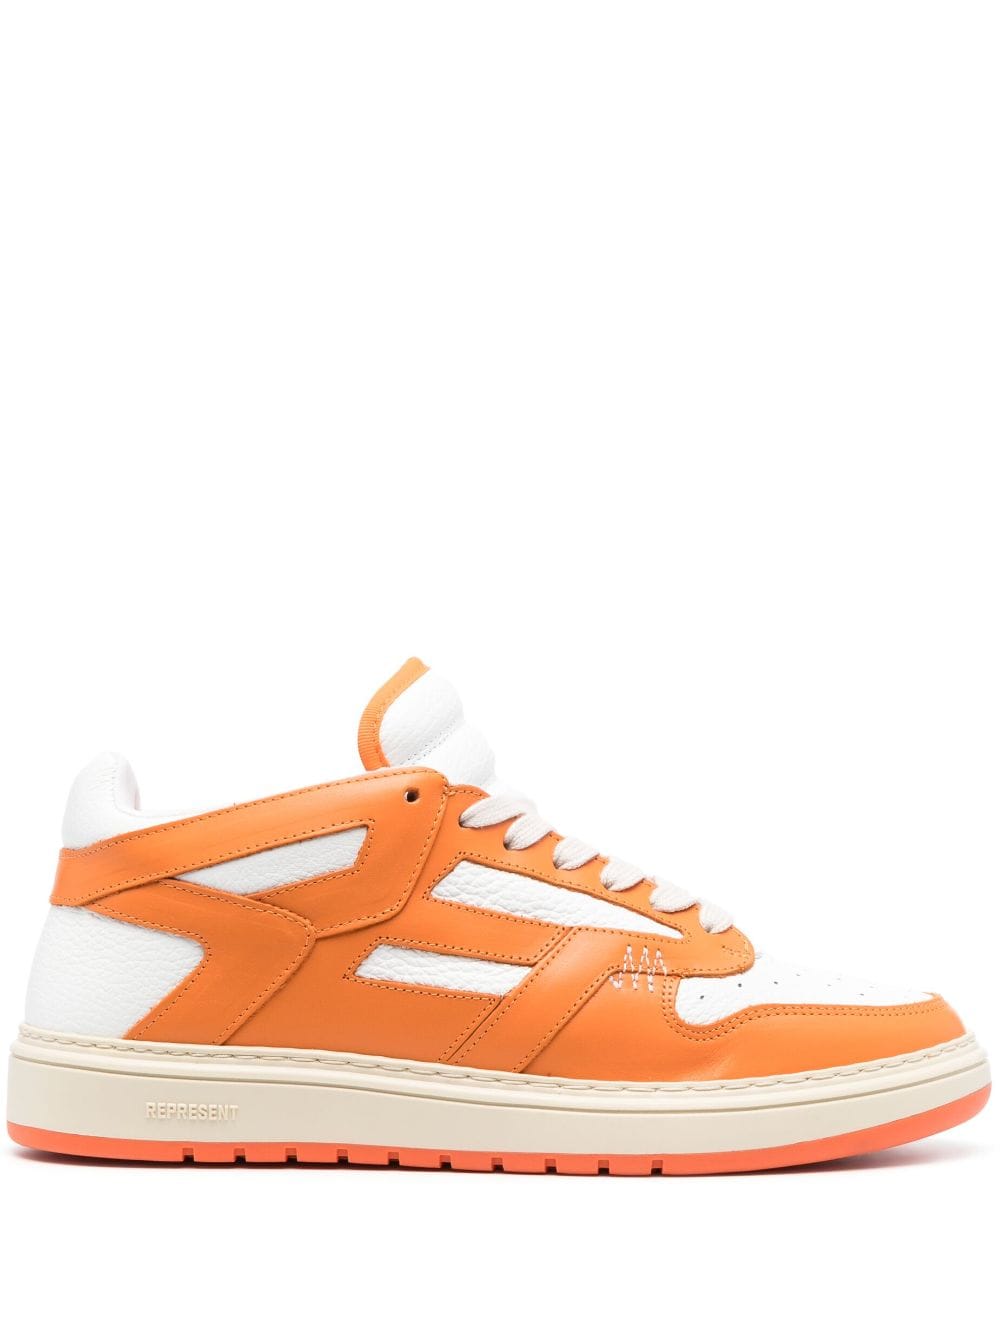 Represent Reptor low-top sneakers - Oranje